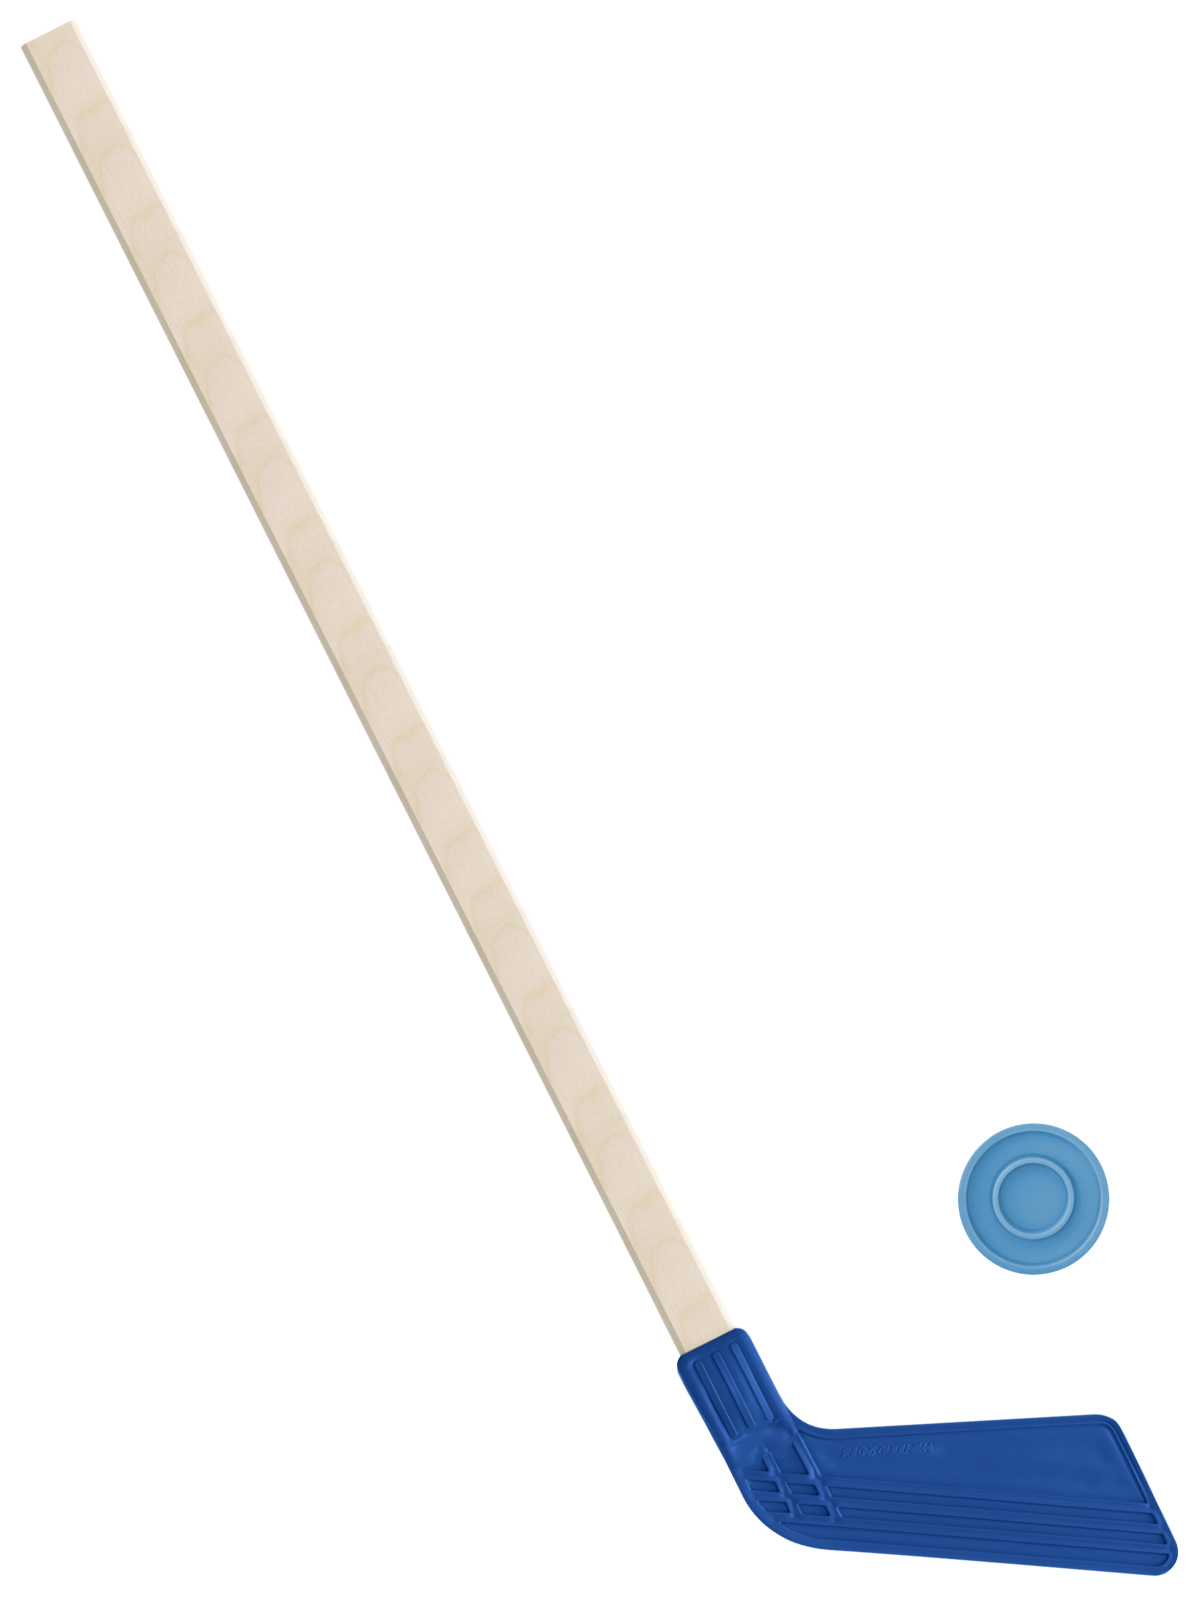 Детский хоккейный набор Задира-плюс, клюшка хоккейная 80 см (синяя)+шайба клюшка флорбольная acito moooo 33 green 80 round левый